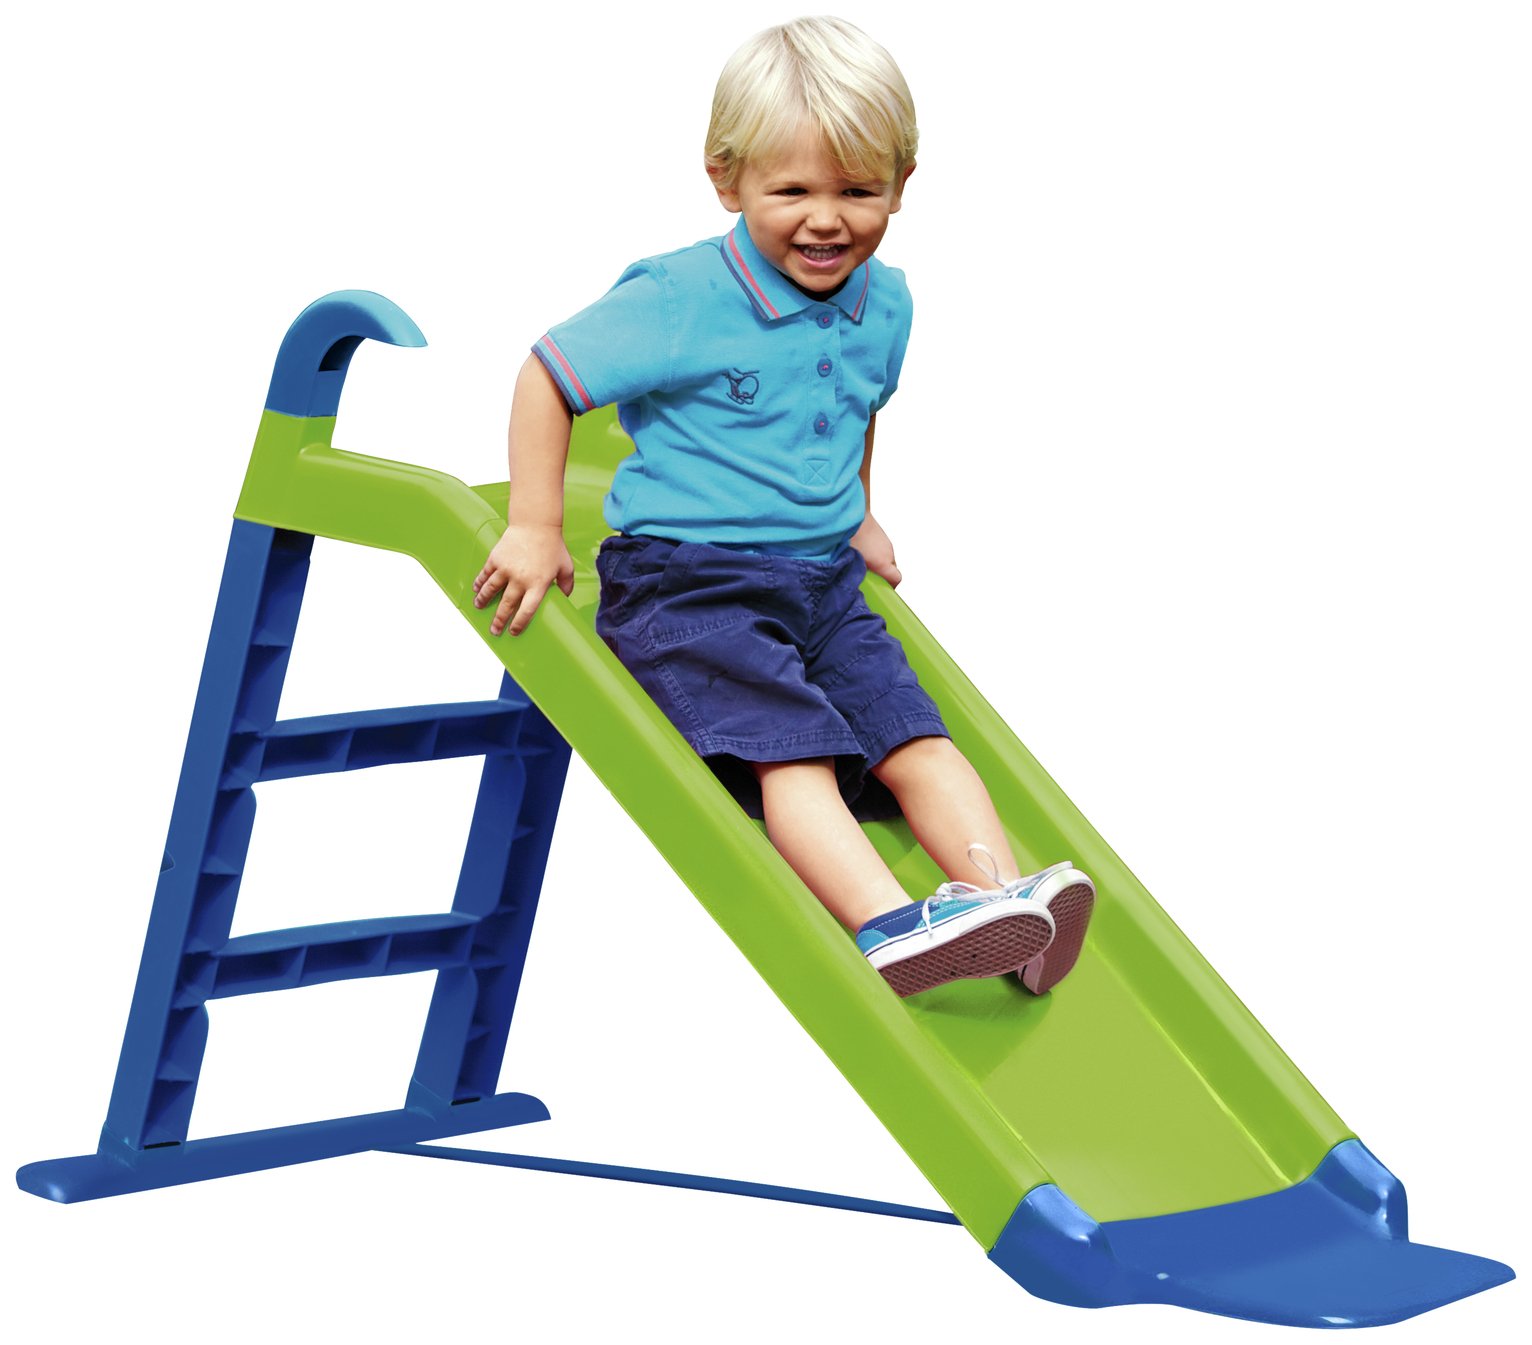 children's outdoor slides at argos